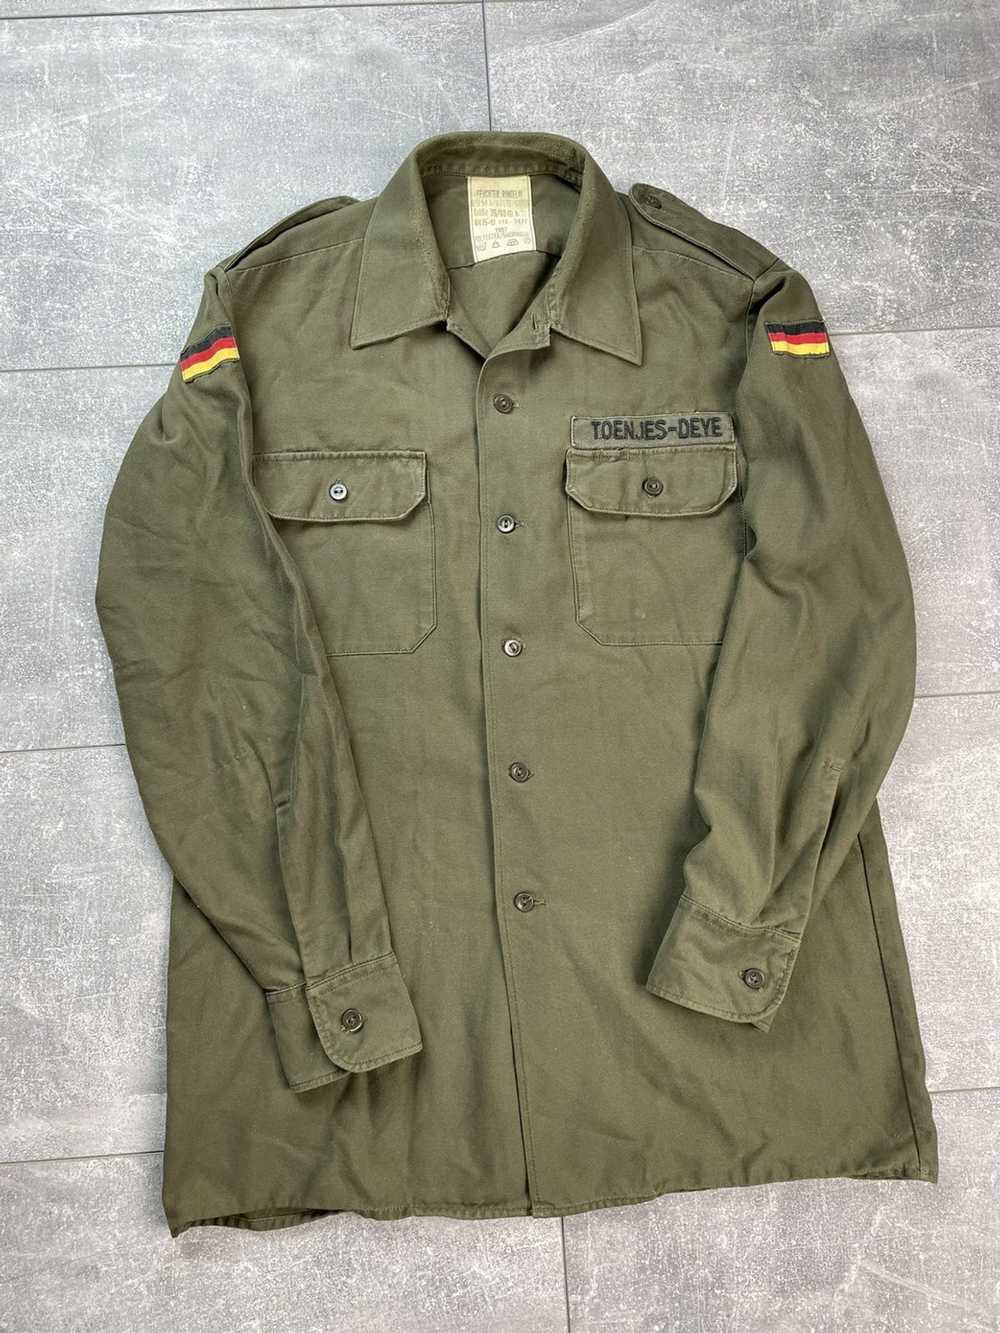 German × German Army Trainers × Vintage Vintage G… - image 2